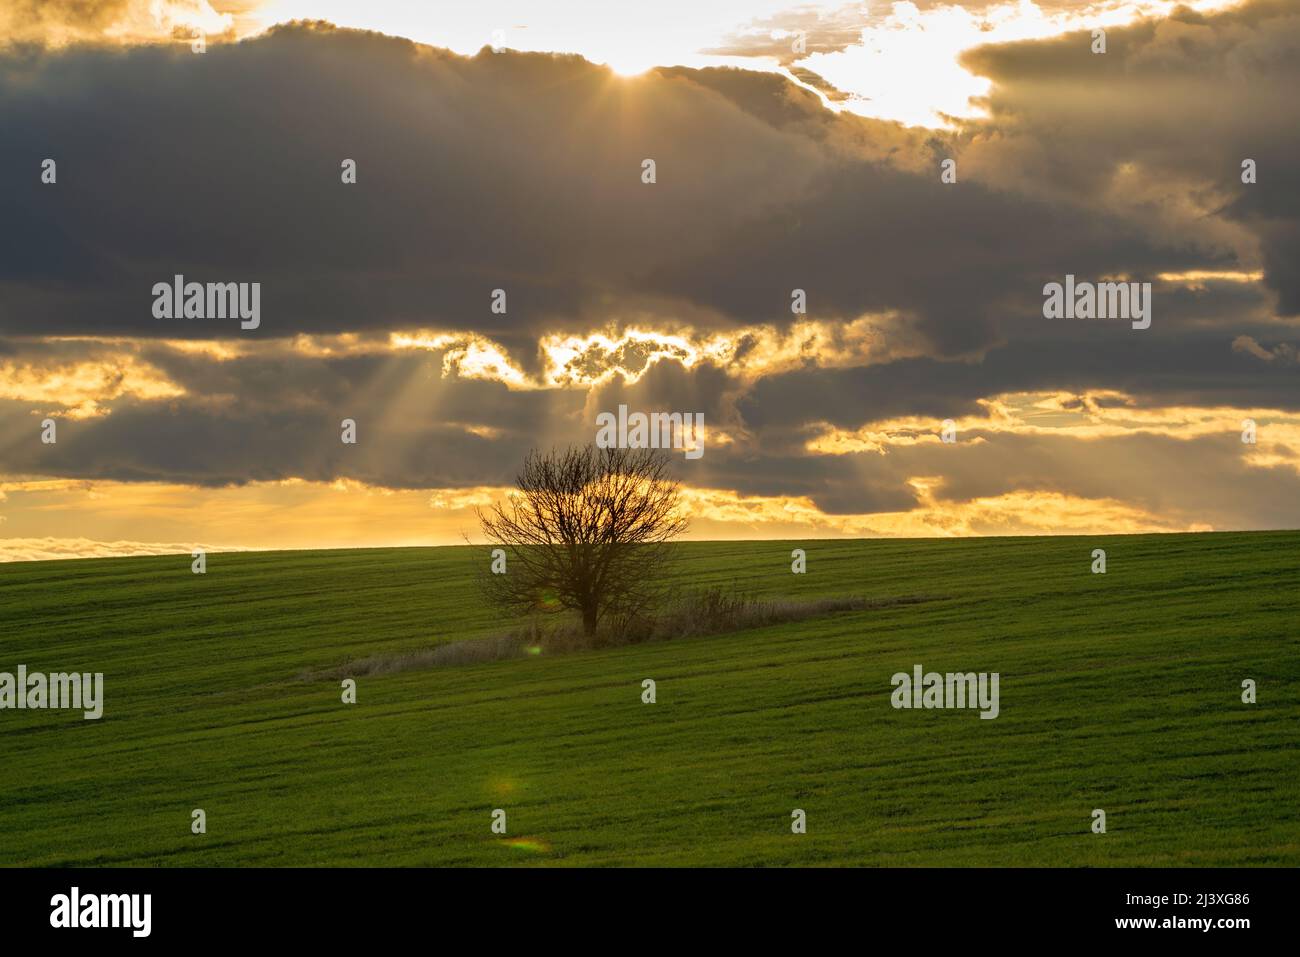 Schöner landschaftlich einsamer Baum auf einem grünen Hügel mit landwirtschaftlichen Pflanzen, die von Sonnenstrahlen des Sonnenuntergangs durch einen schönen dramatischen Abendhimmel mit Wolken beleuchtet werden. Stockfoto